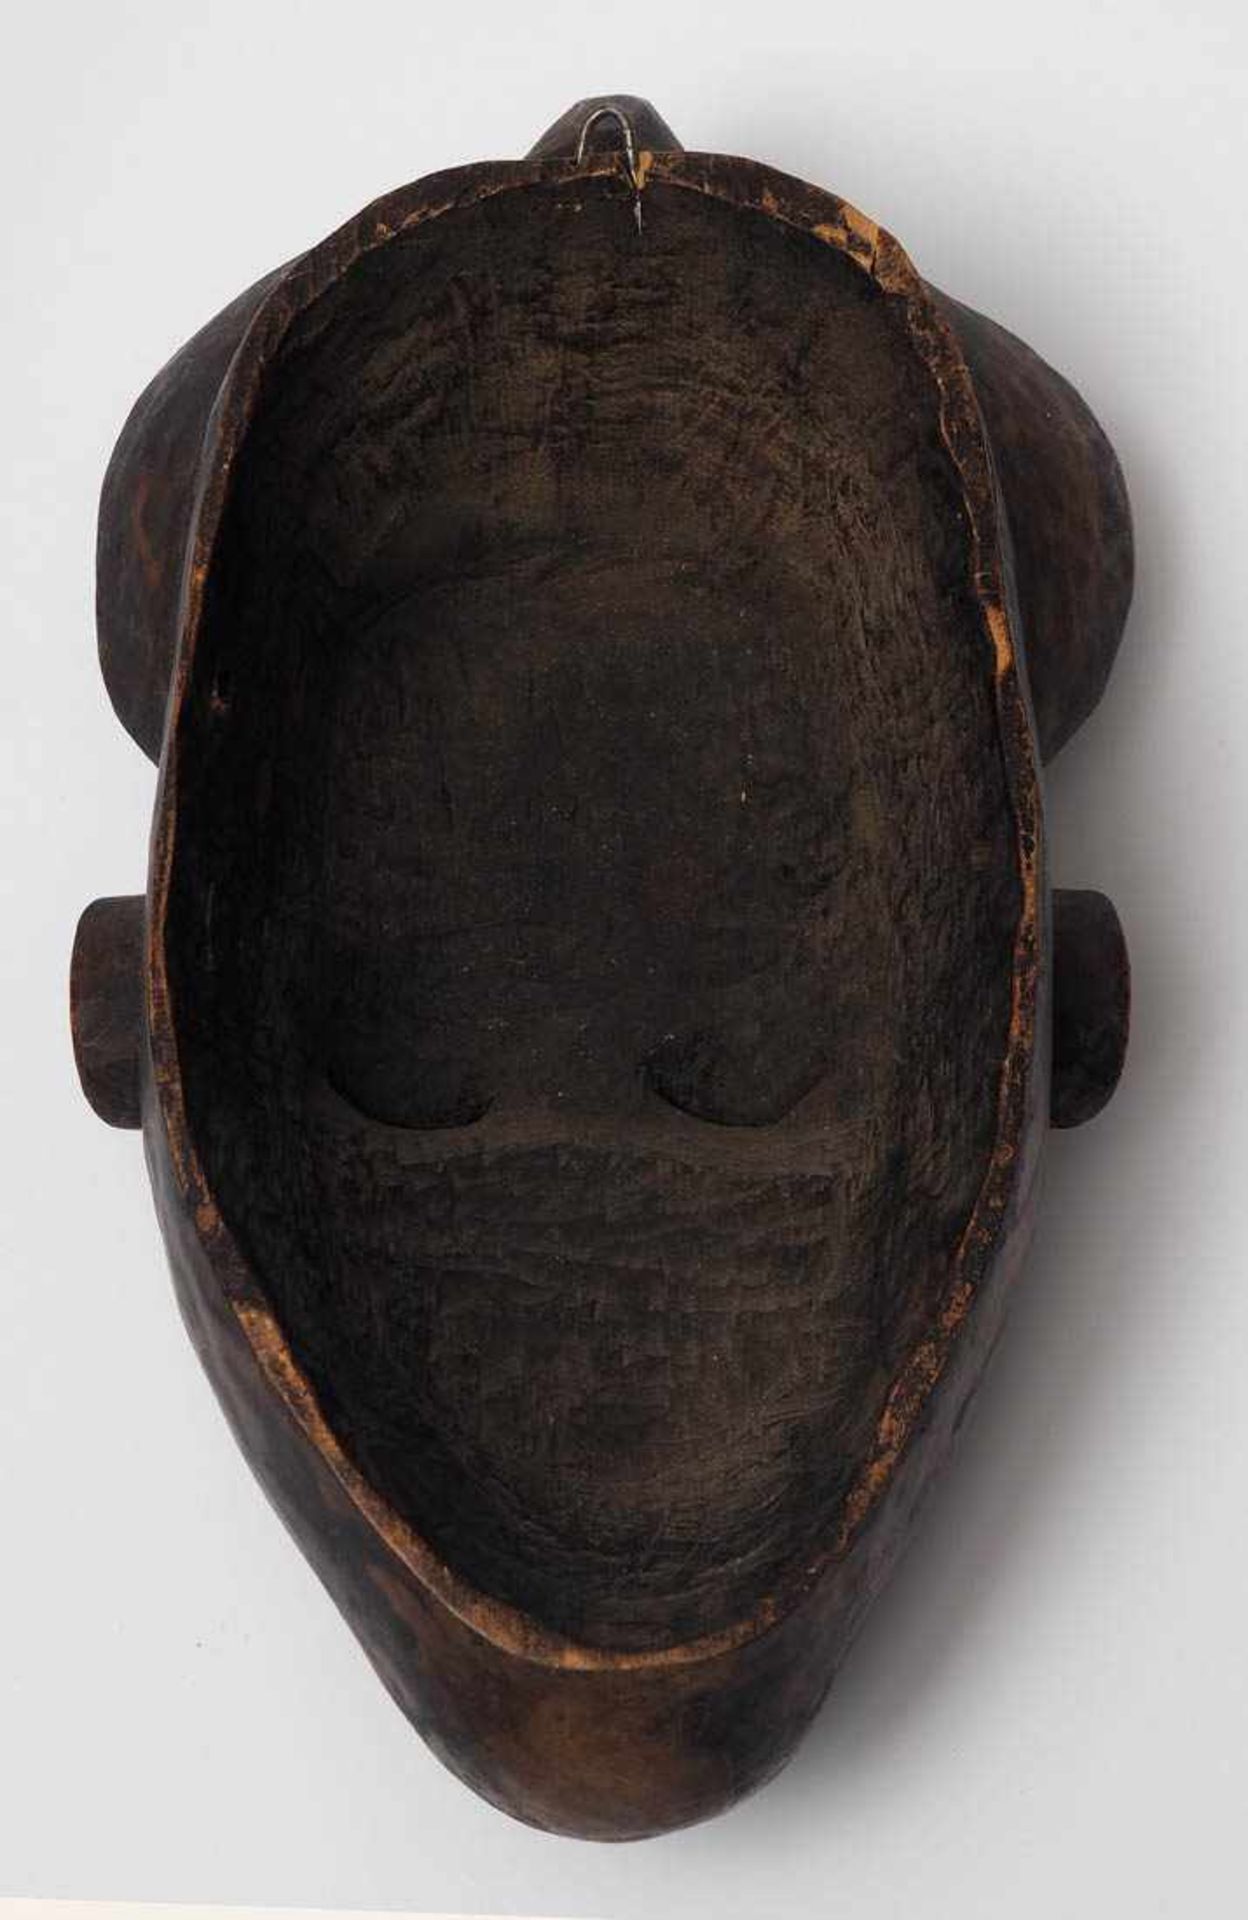 Tanzmaske, Afrika Holz, geschnitzt. Gebrauchsspuren. H.28cm. - Bild 3 aus 3